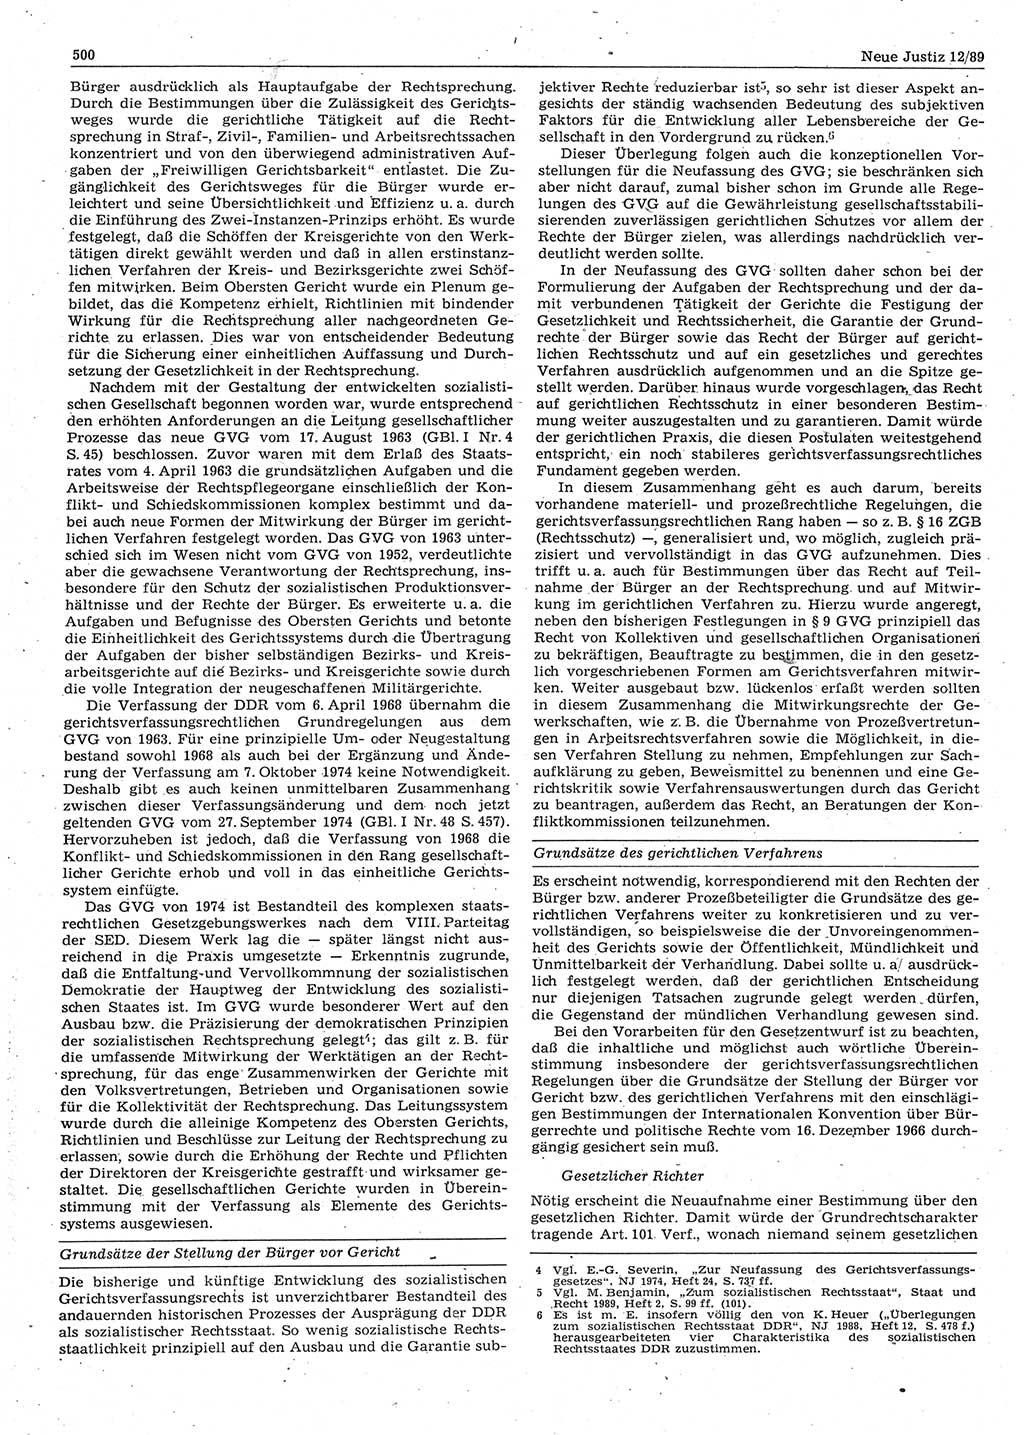 Neue Justiz (NJ), Zeitschrift für sozialistisches Recht und Gesetzlichkeit [Deutsche Demokratische Republik (DDR)], 43. Jahrgang 1989, Seite 500 (NJ DDR 1989, S. 500)